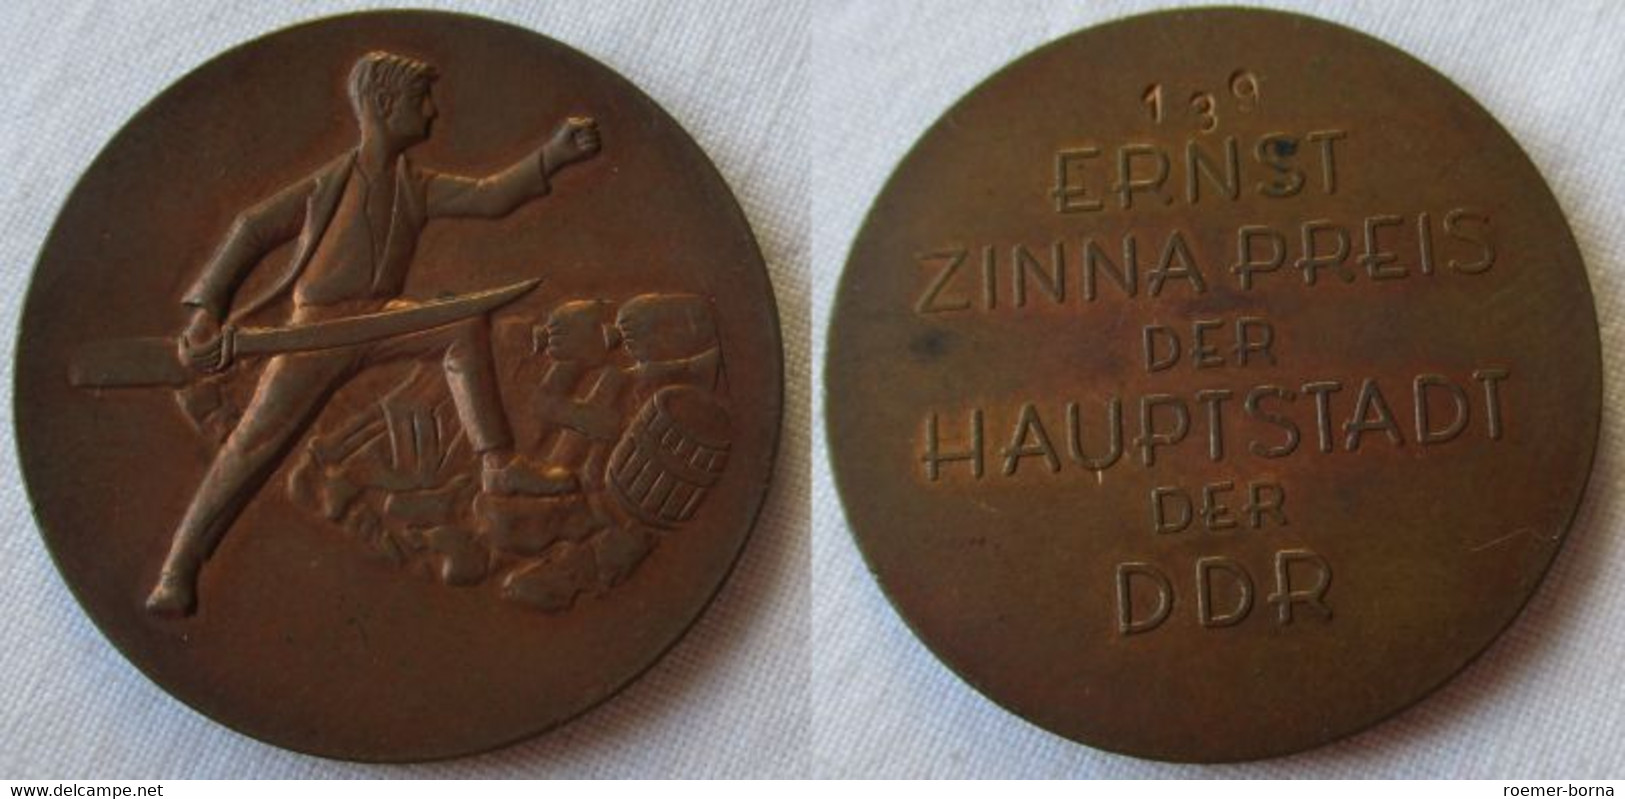 DDR Abzeichen Ernst Zinna Preis Der Hauptstadt Der DDR PROBE Nr. 139 (111165) - Duitse Democratische Republiek